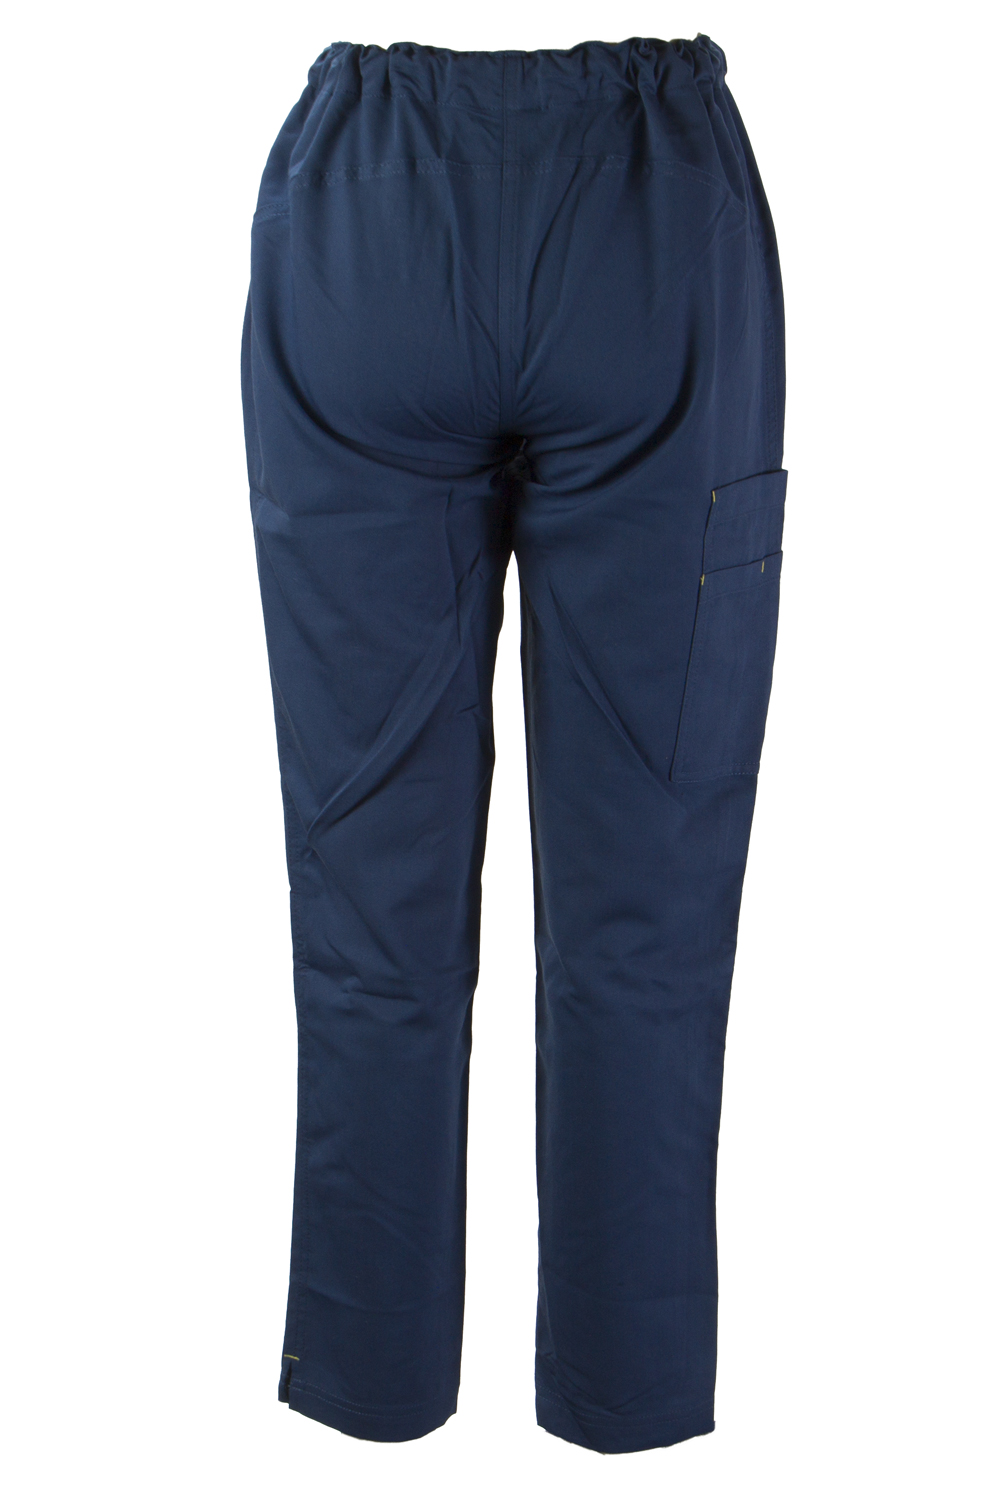 FIGS Women's 2-Pocket Scrub Pants FPW0103 $46 NWT | eBay